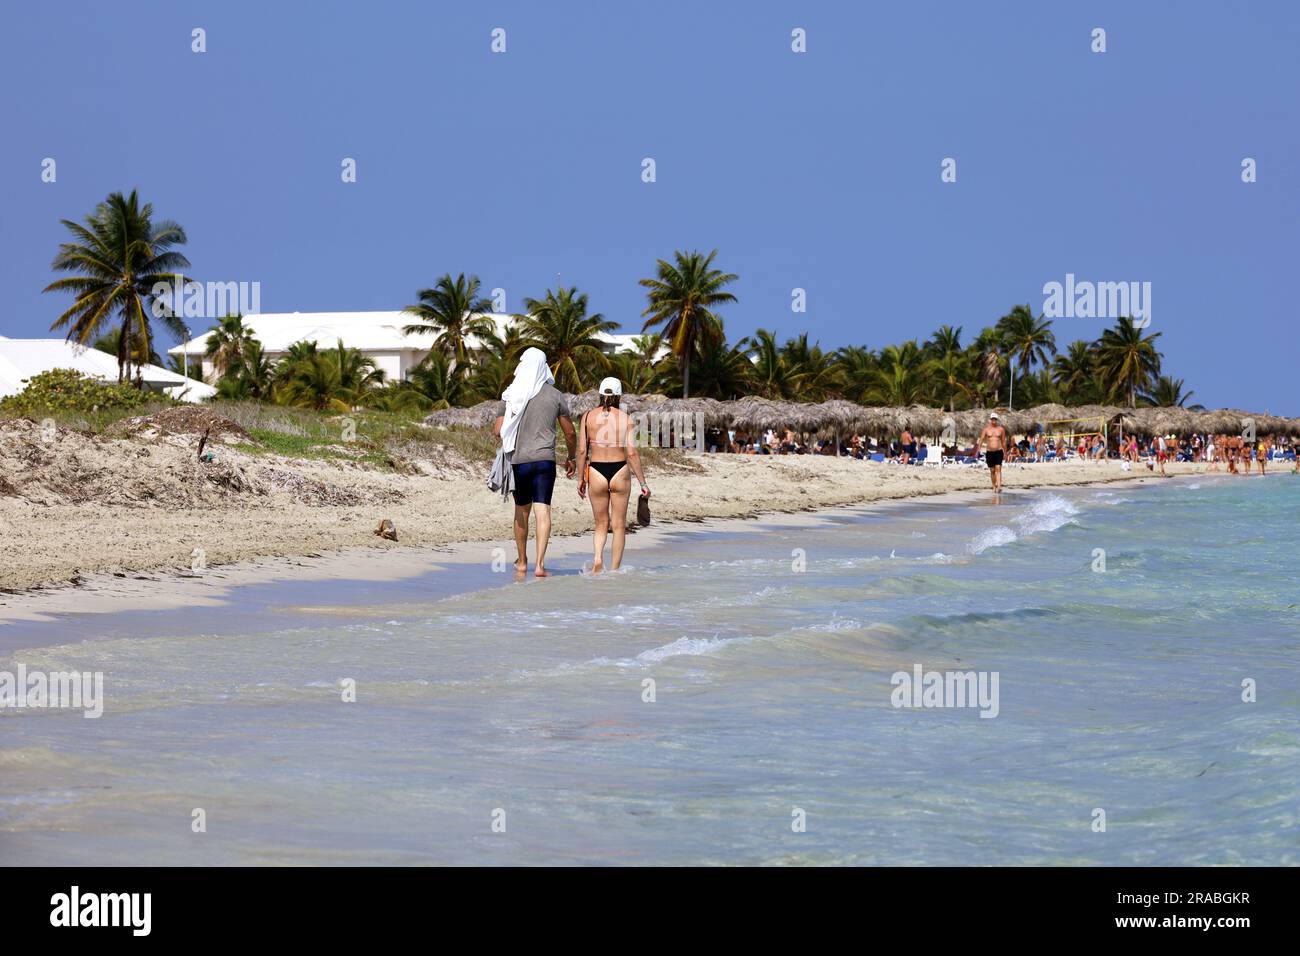 Ein Paar in Badebekleidung, das am Sandstrand entlang der Meereswellen spaziert. Tropisches Resort mit Kokospalmen und Korbschirmen Stockfoto